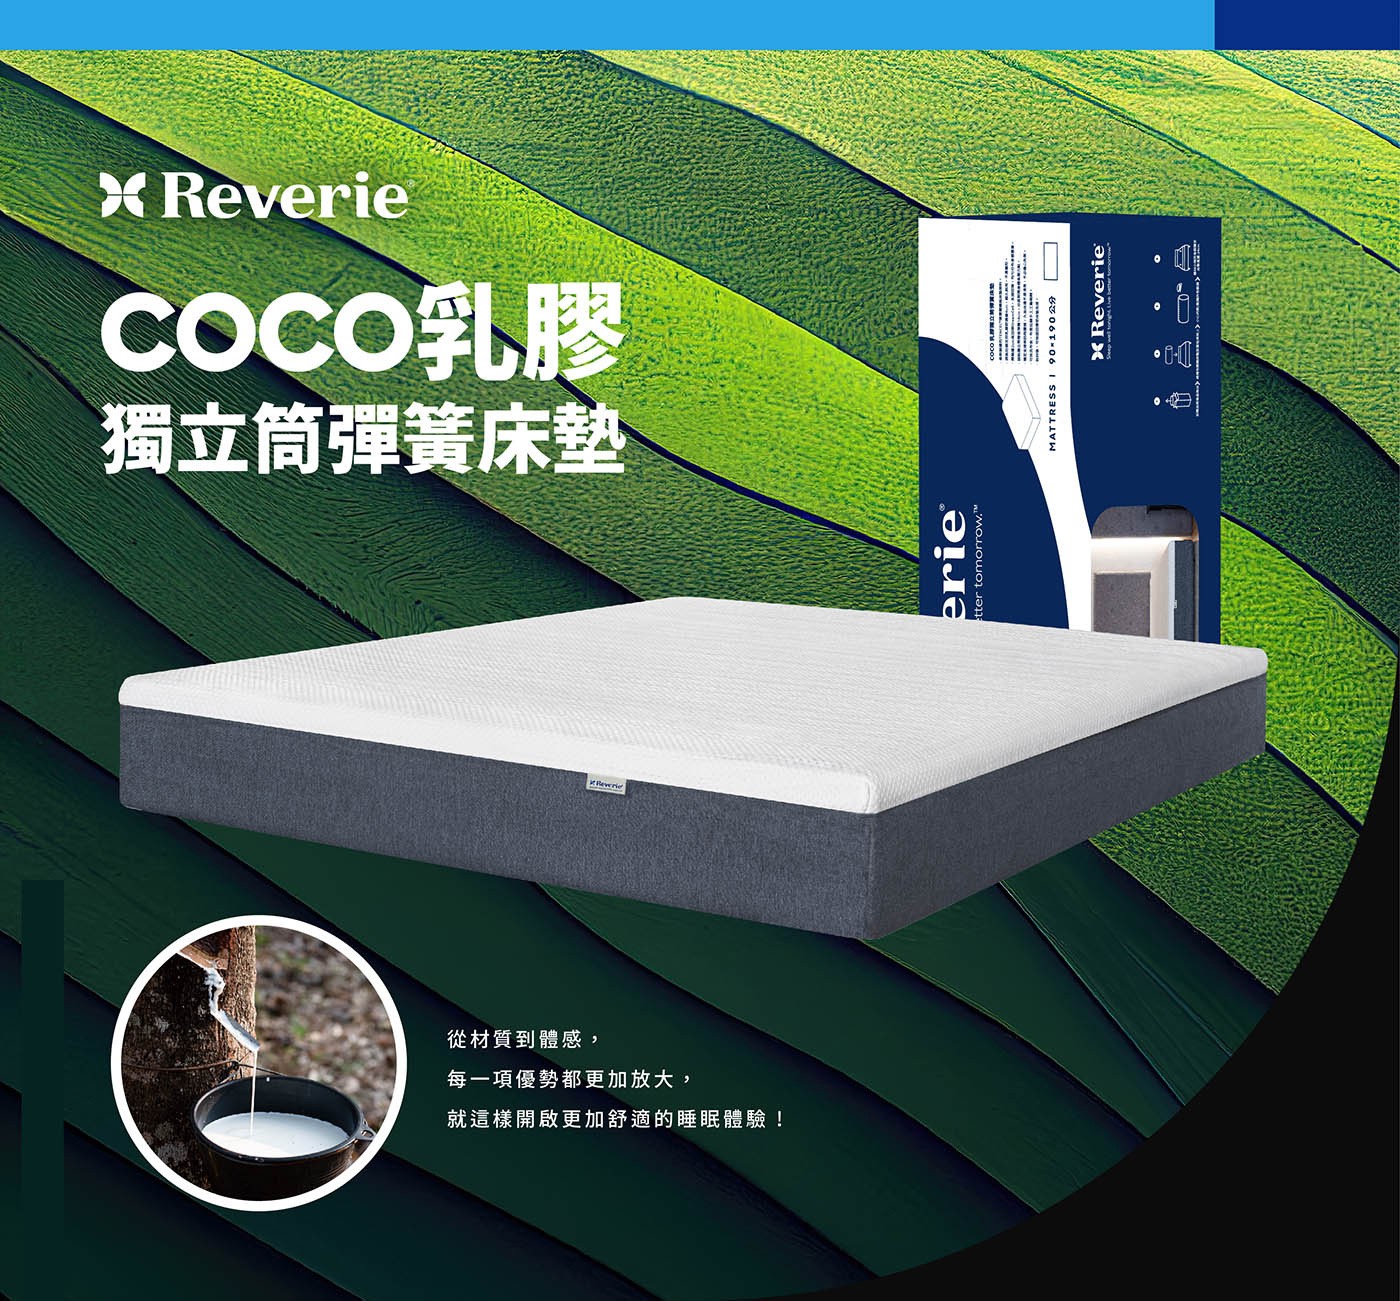 幻知曲COCO乳膠獨立筒天然乳膠舒適，防蟎抗菌，袋裝獨立筒彈簧好支撐，美國品牌品質保證。